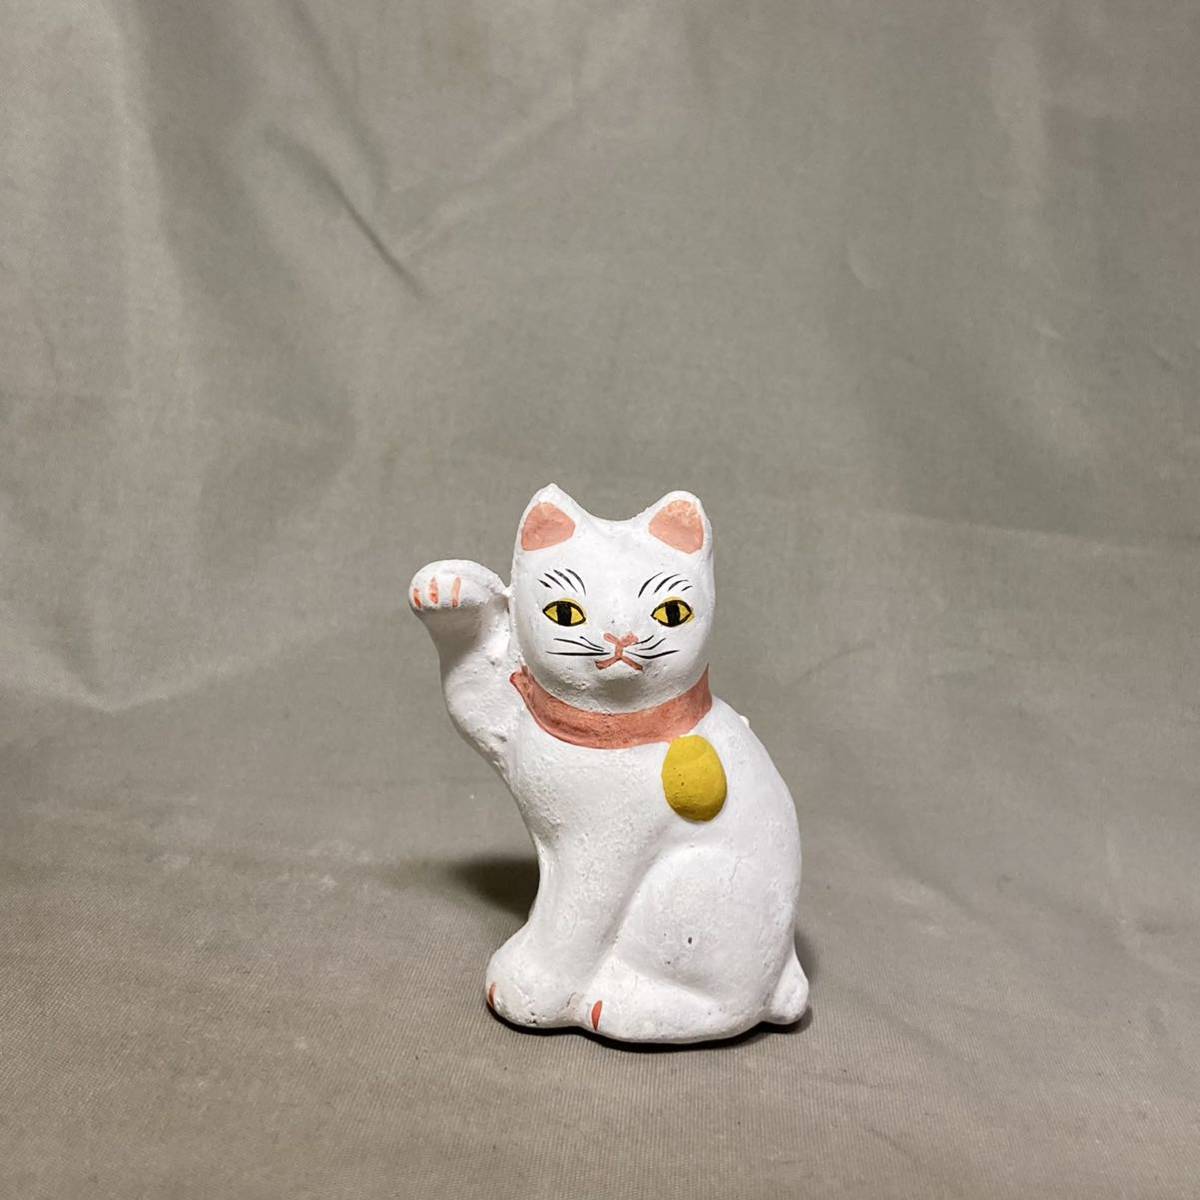 すぐったレディース福袋 土人形 招き猫 今戸焼 レア品 招福猫 縁起物 